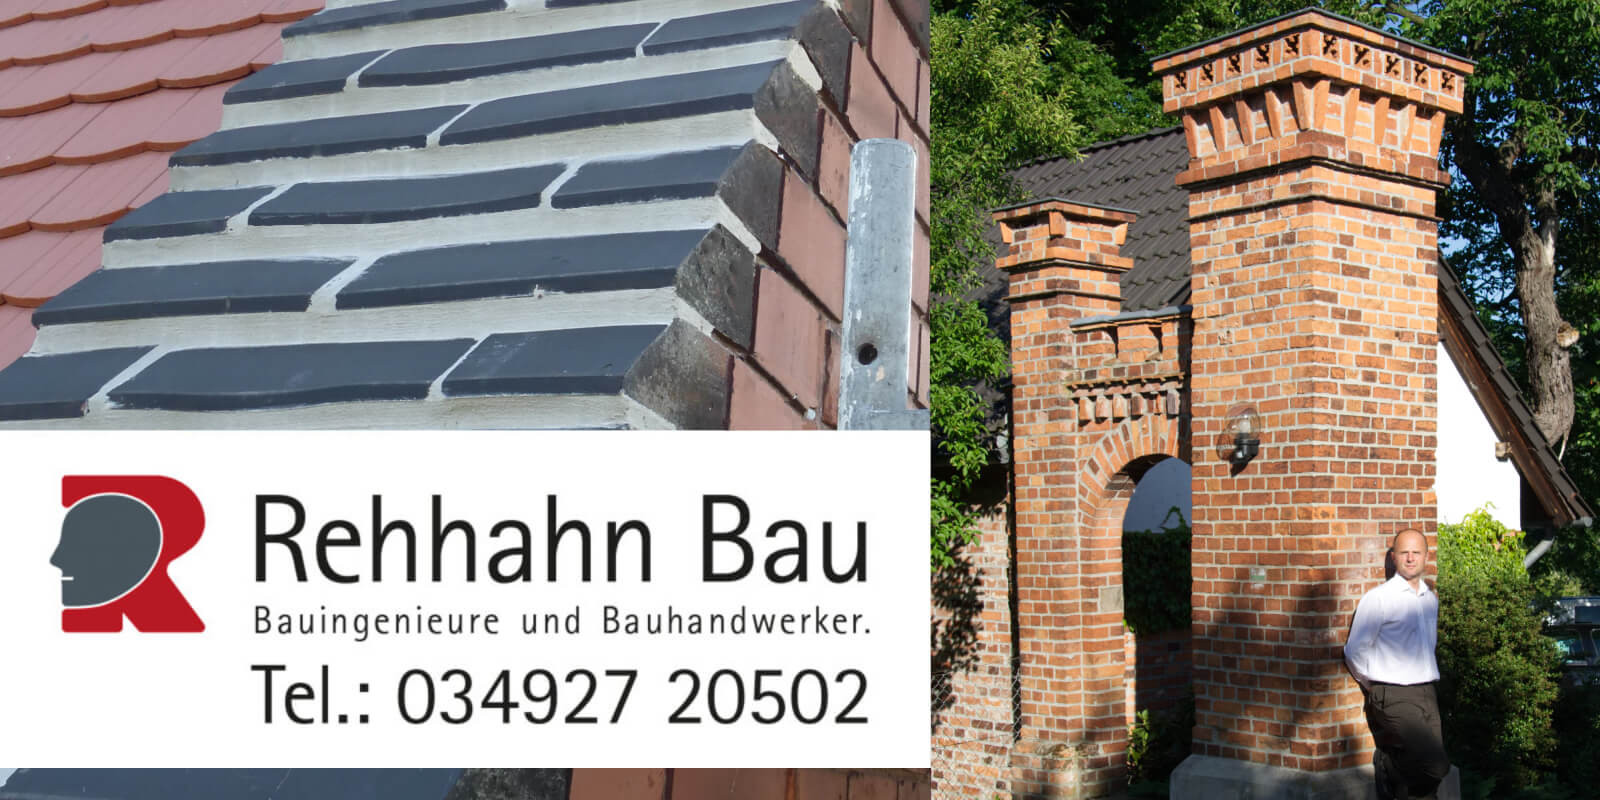 Mauerwerk sanieren? Die Bauingenieure und Bauhandwerker der Baufirma Rehhahn Bau leisten gerne ganze Arbeit.